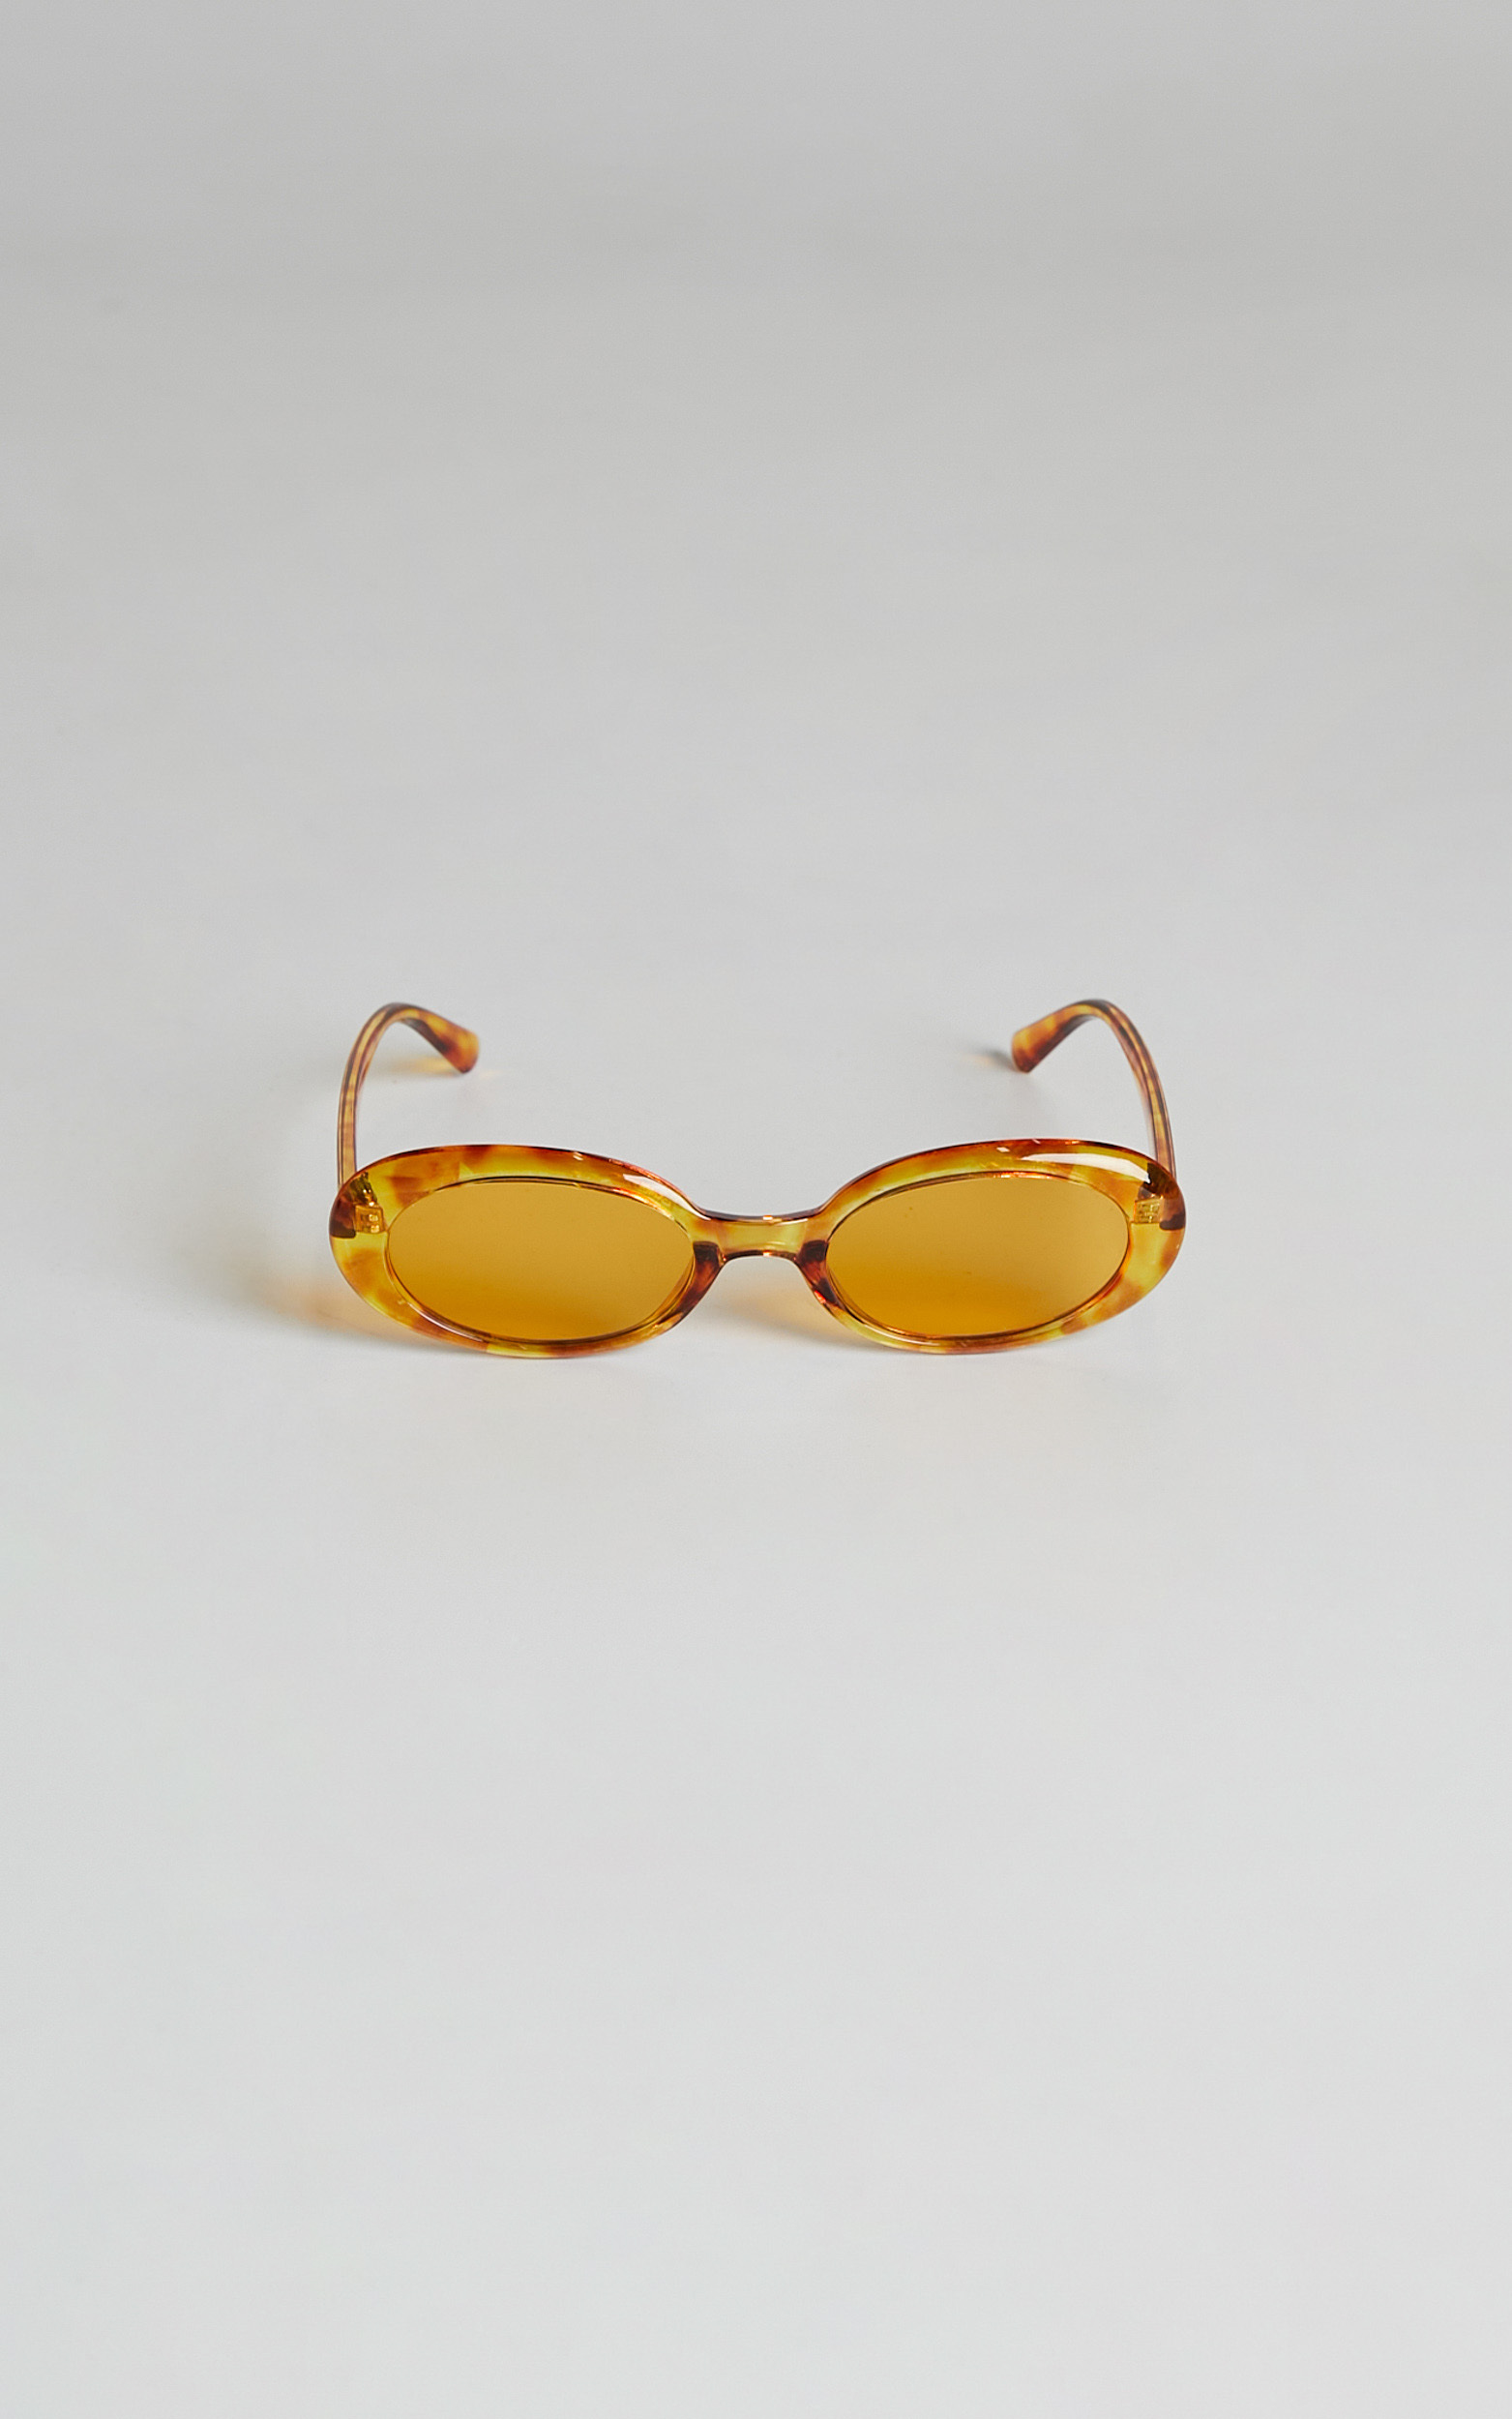 Czarina Retro Sunglasses in Orange Tortoise - NoSize, ORG2, hi-res image number null